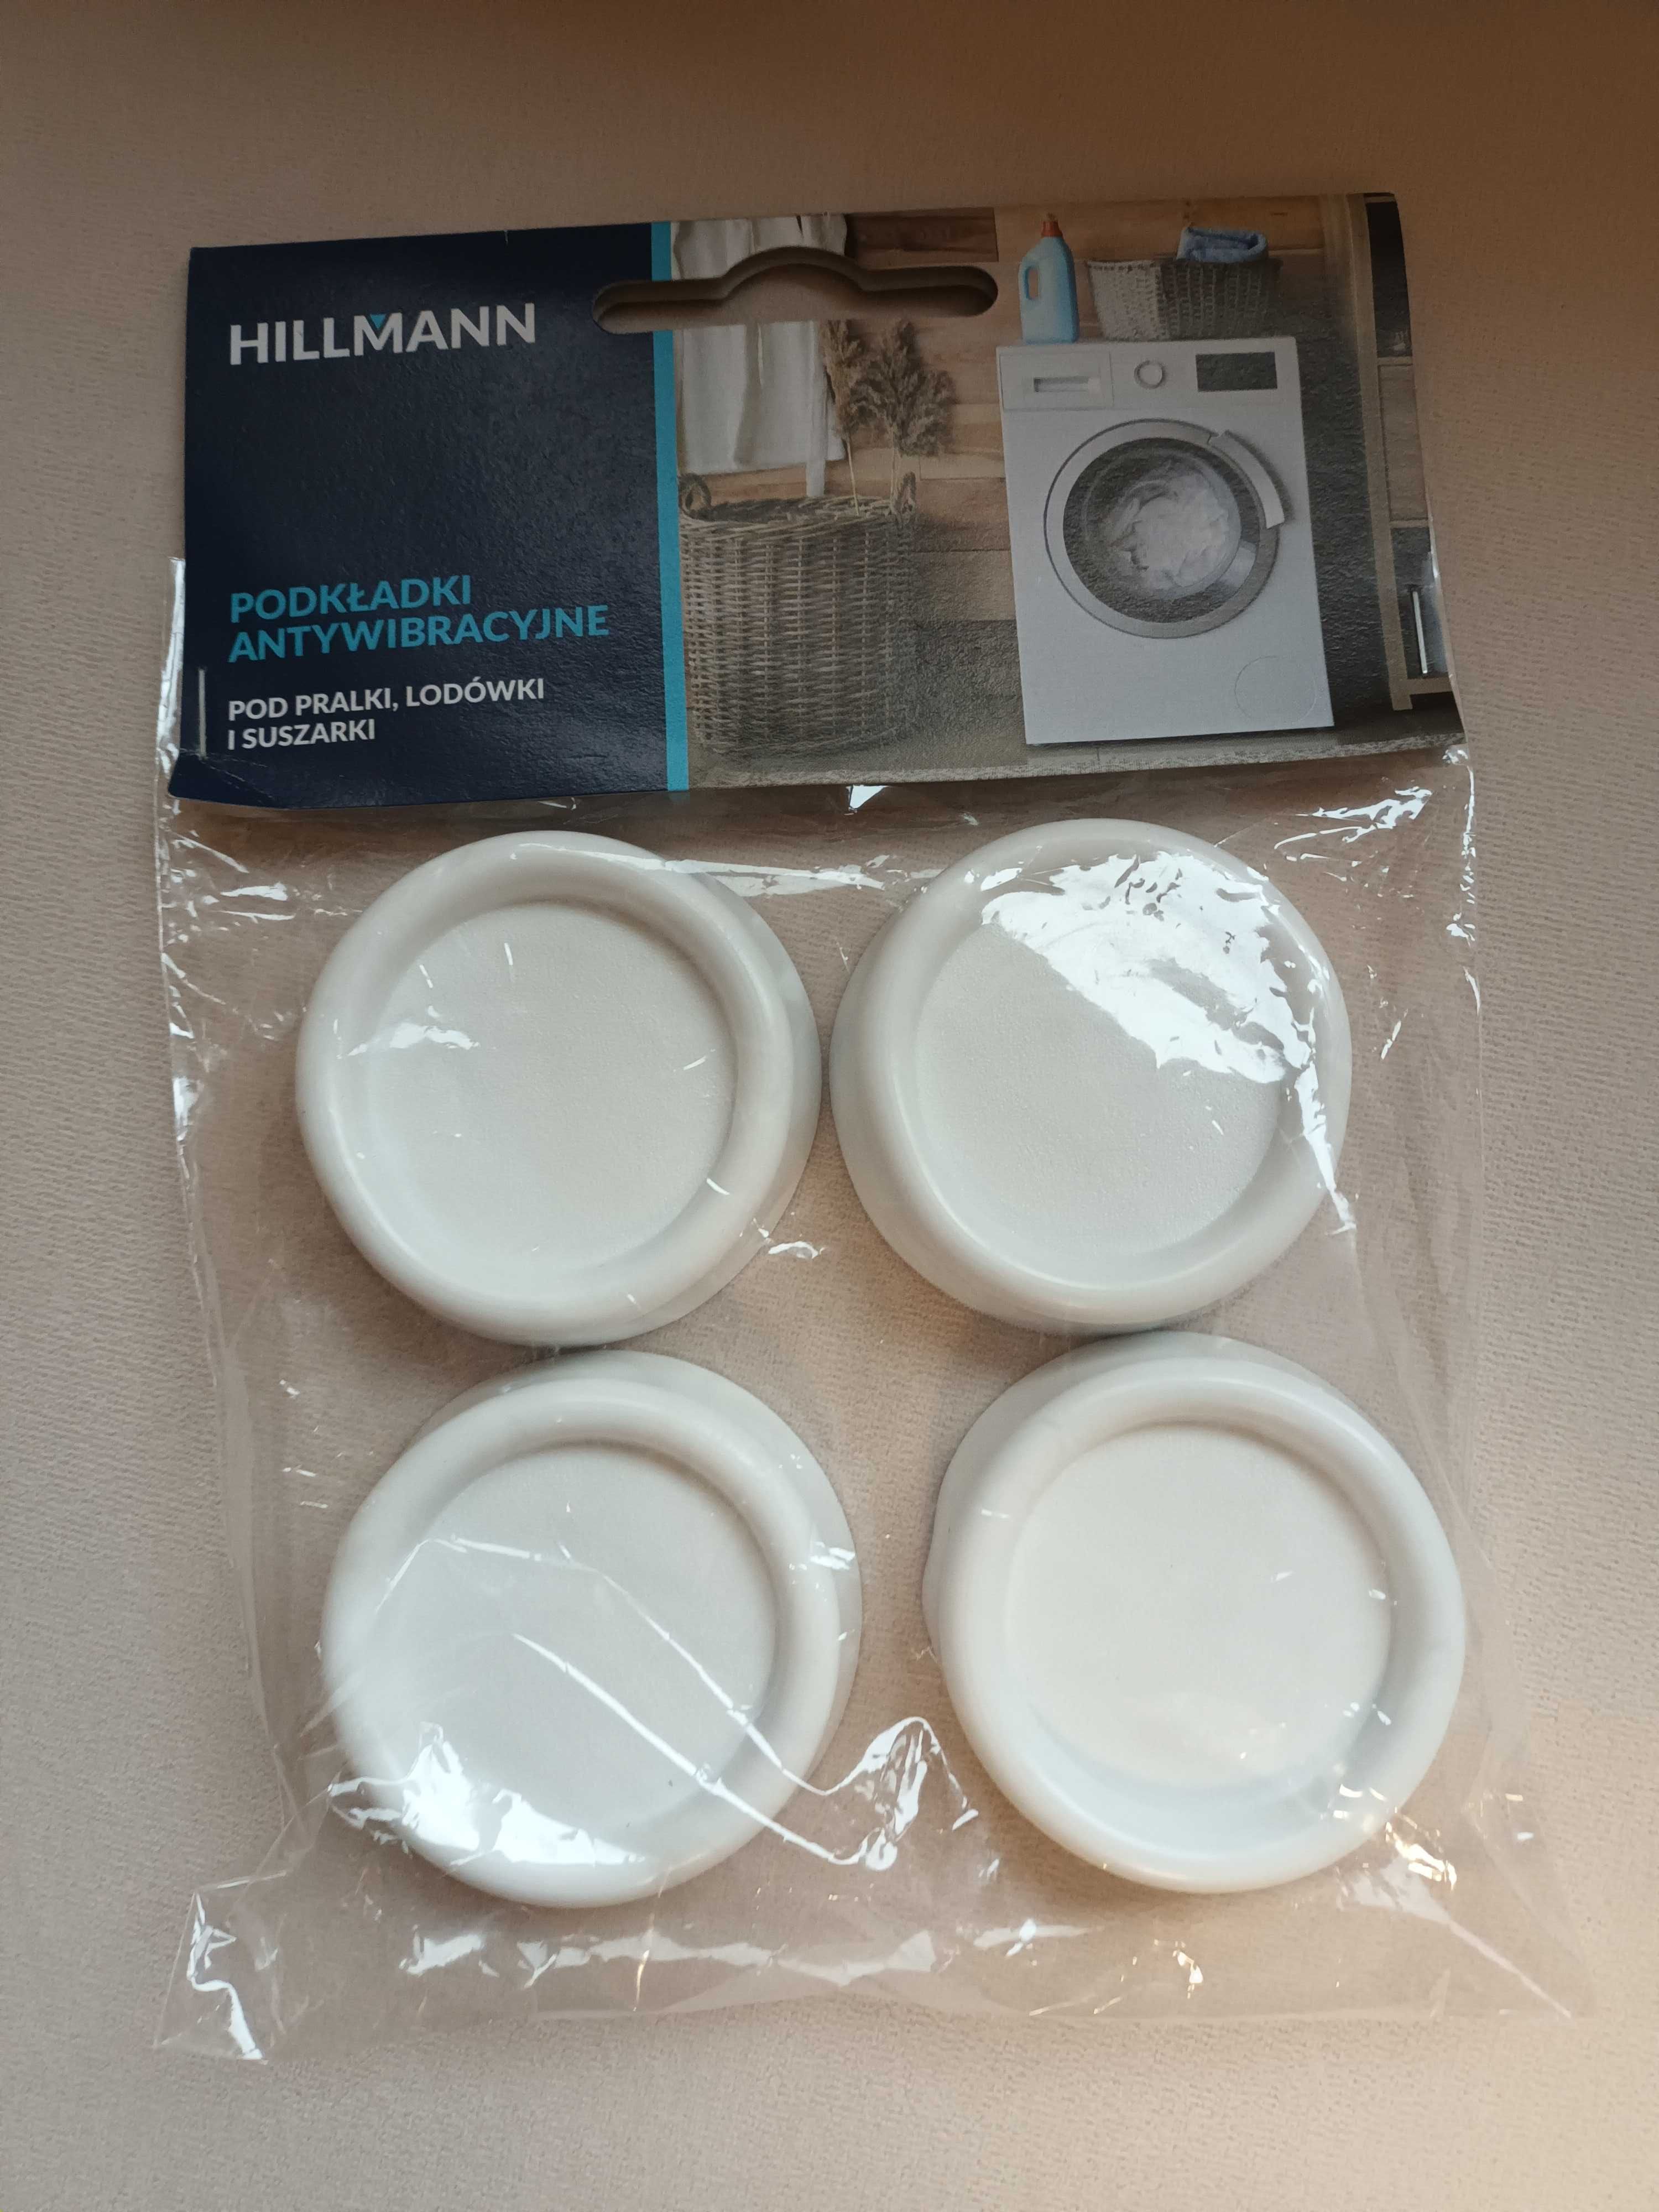 Hillmann podkładki antywibracyjne pod lodówki, pralki i suszarki